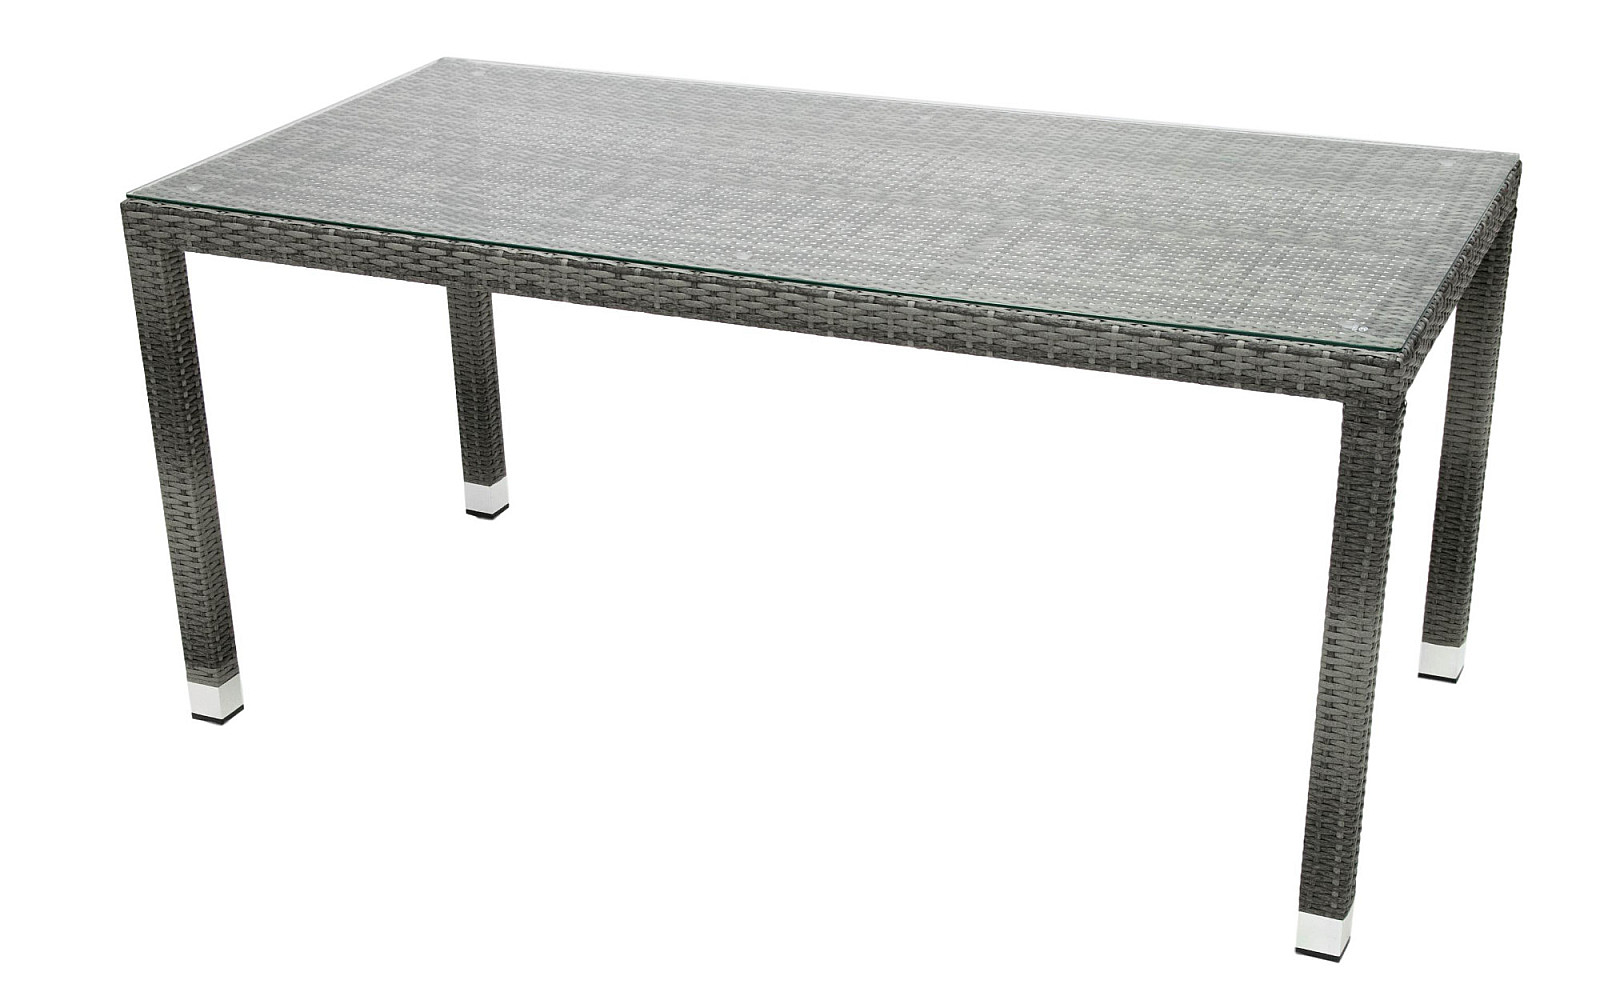 DEOKORK Zahradní ratanový stůl NAPOLI 160x80 cm (šedá)